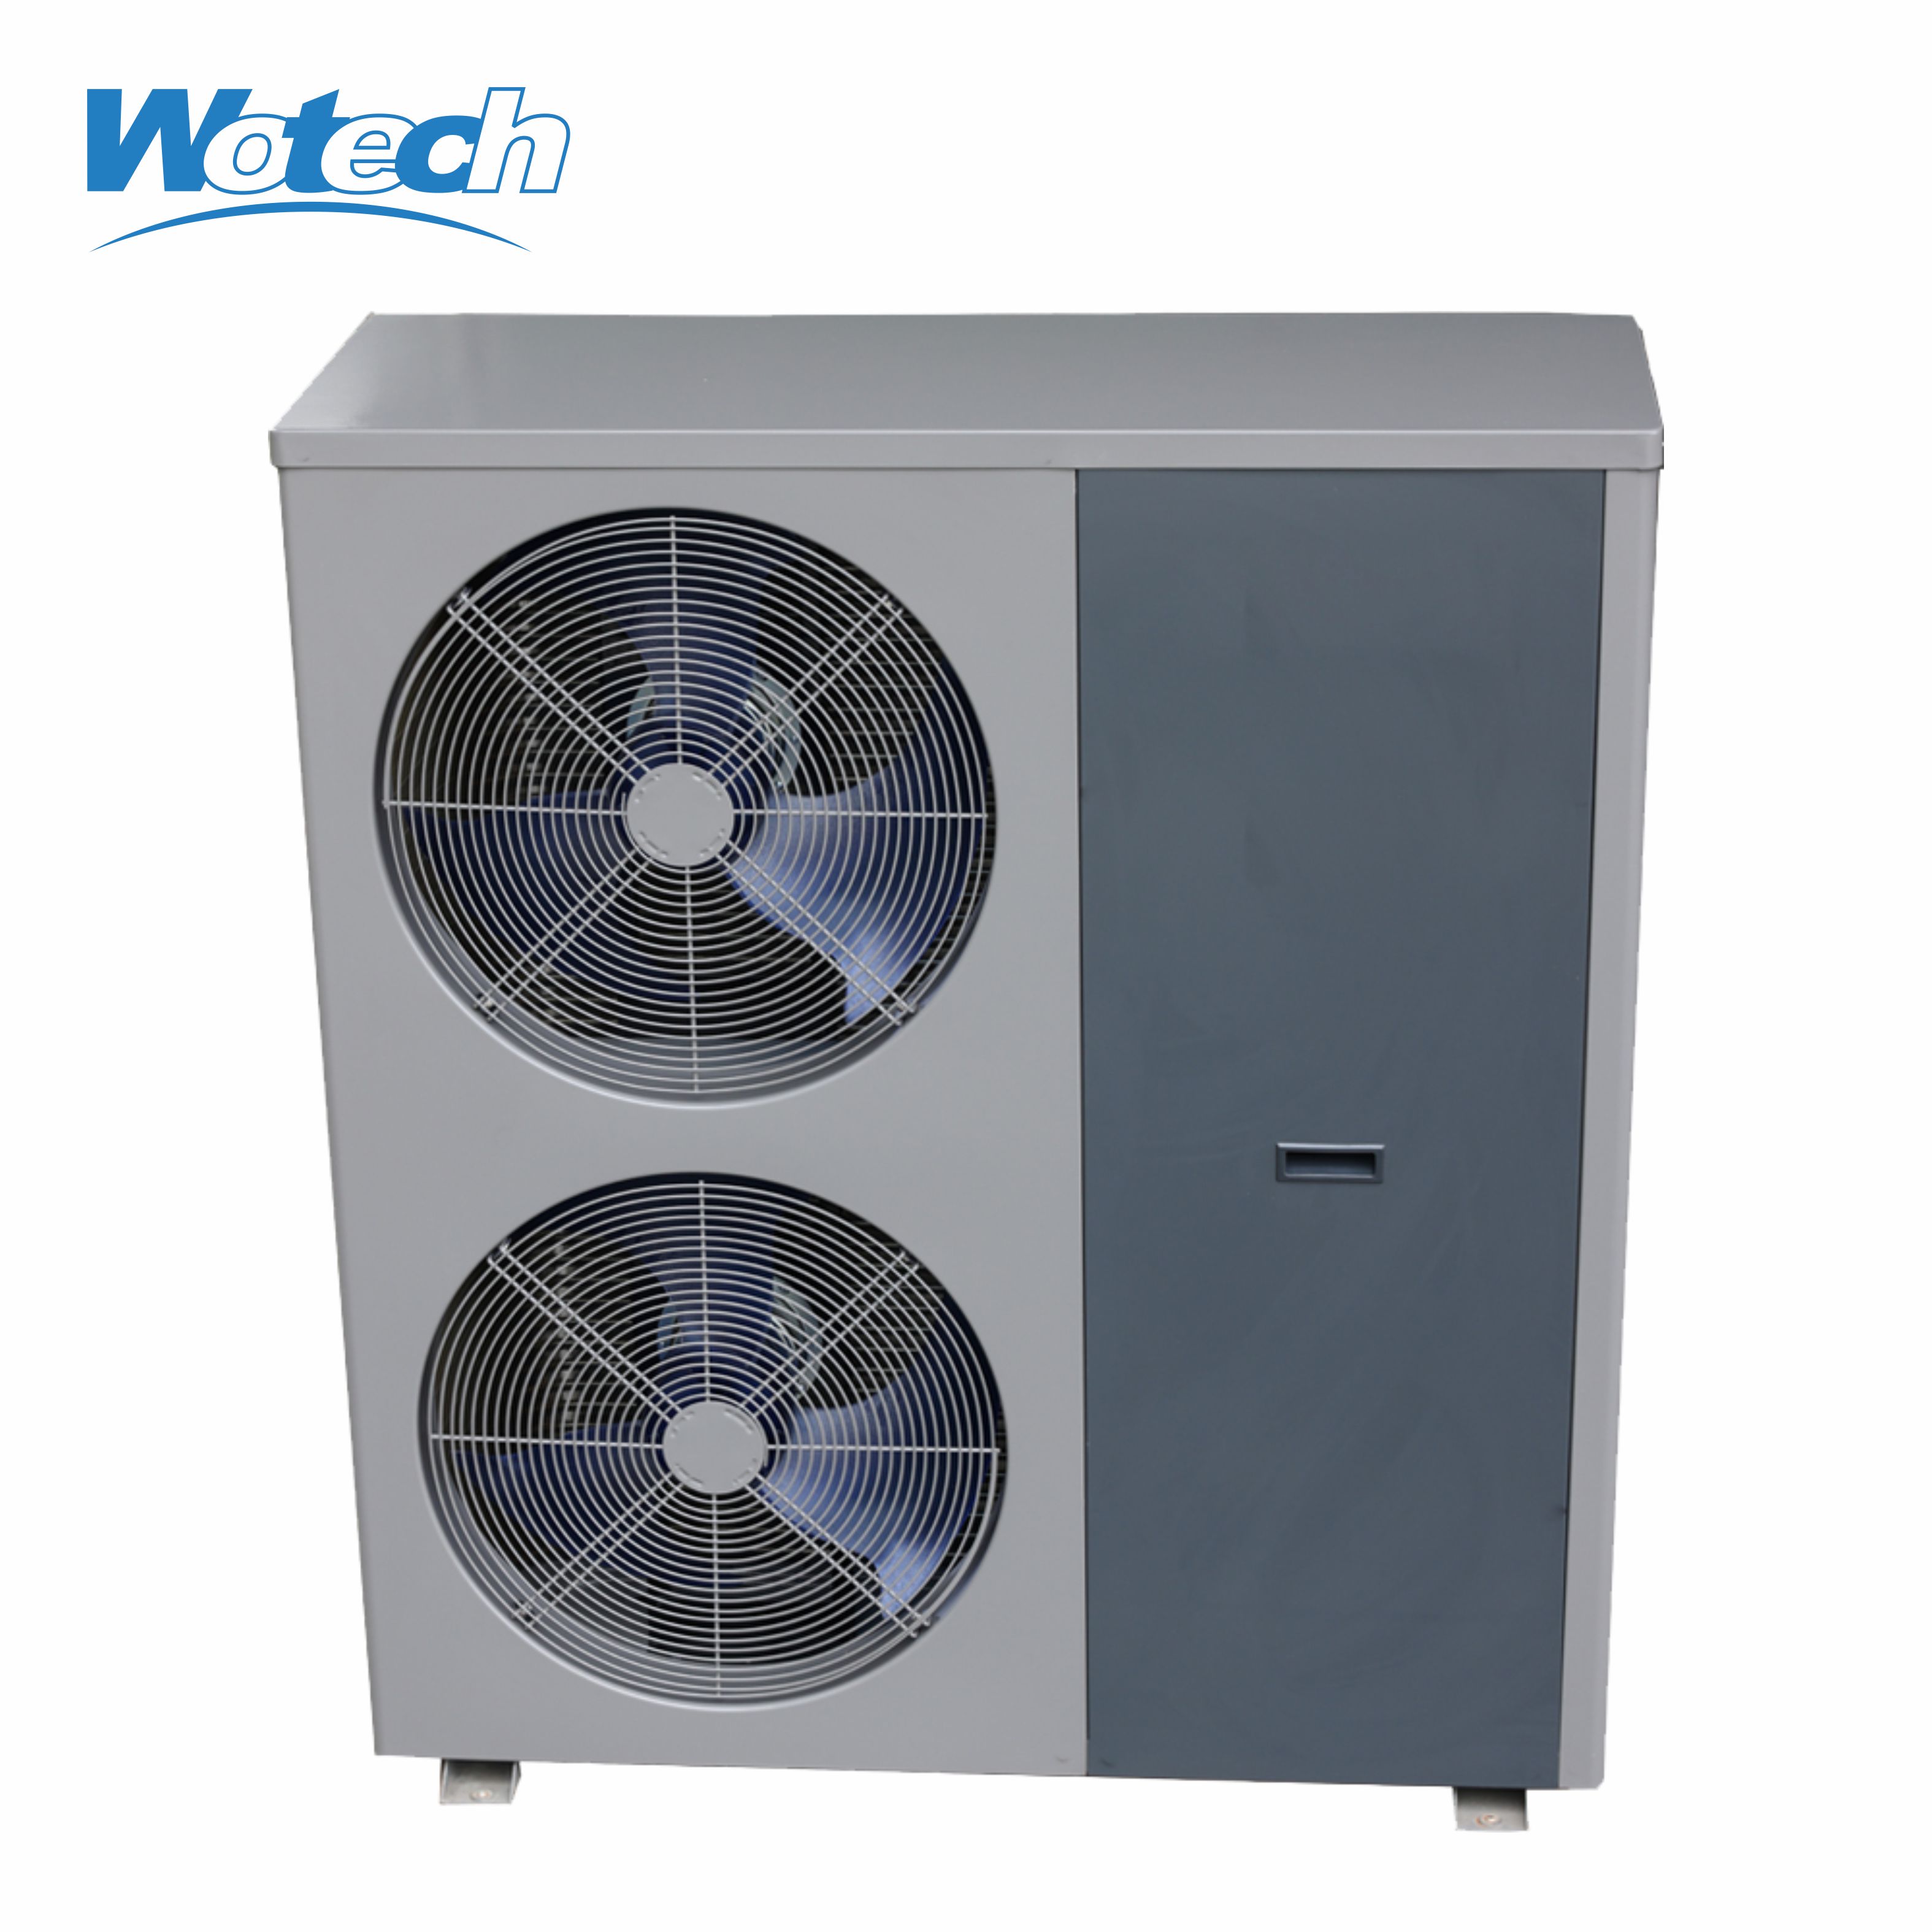 Umweltfreundliche Ein-/Aus-Monoblock-Luft-Wasser-Wärmepumpe mit R32-Kältemittel